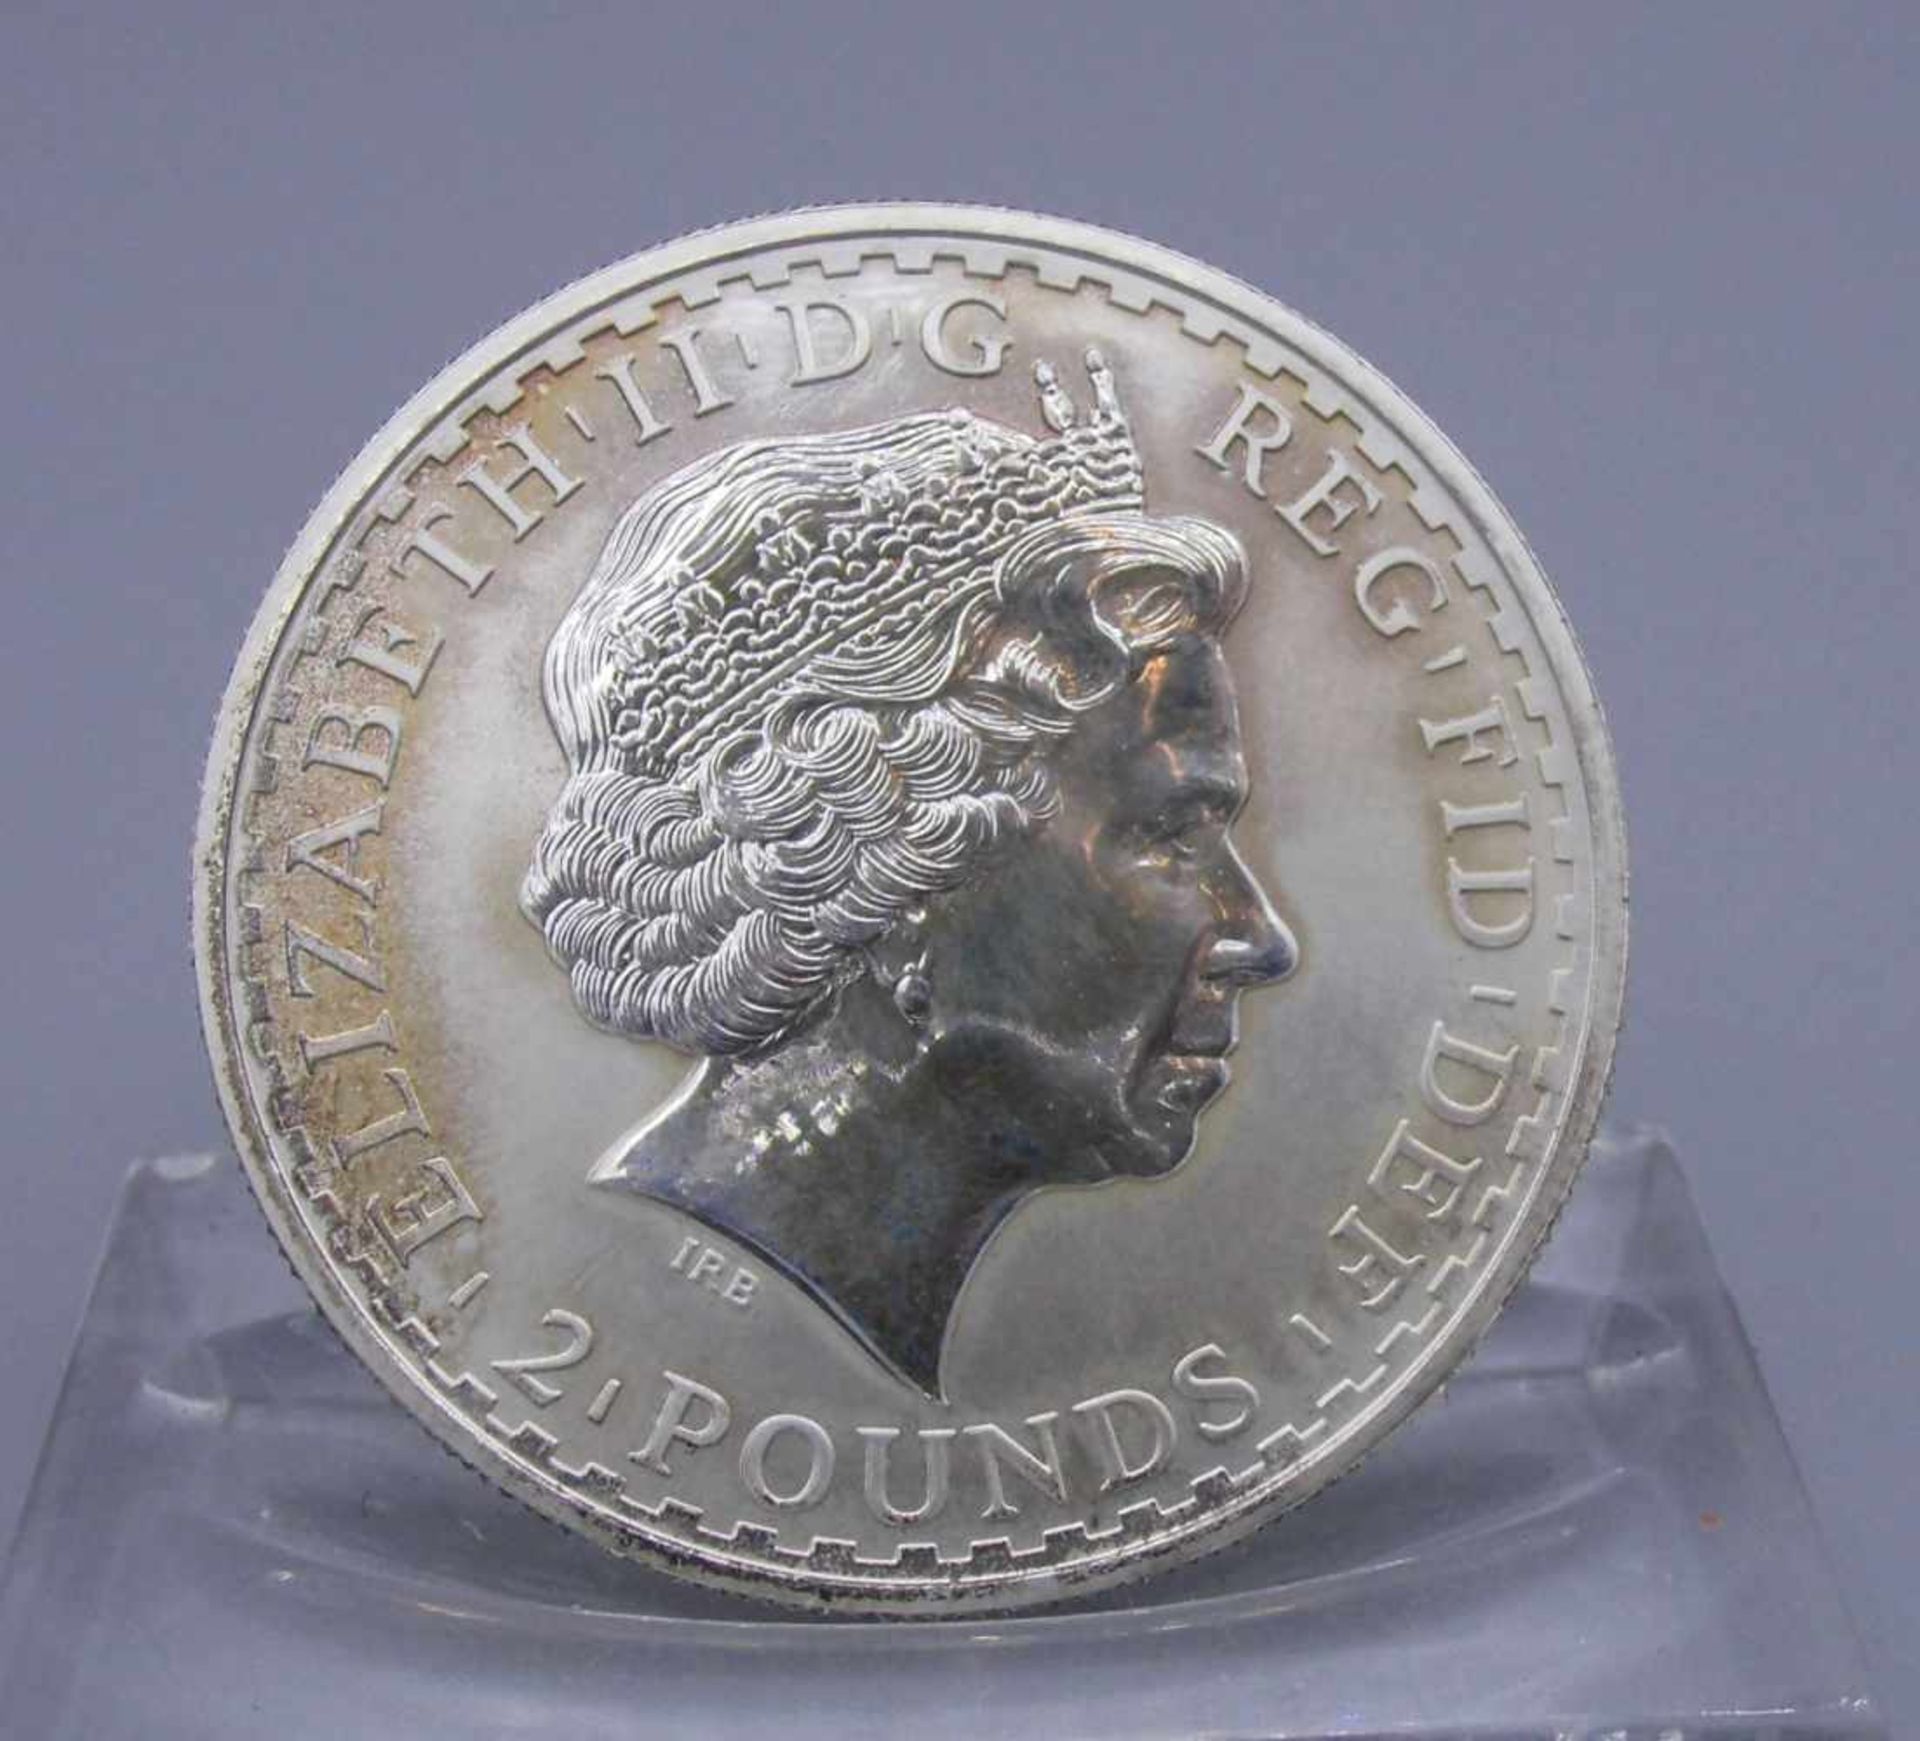 SILBERMÜNZE "2 POUNDS BRITANNIA" / coin, Silber (32,5 g). Avers: Erhaben geprägte Büste Königin - Image 2 of 2